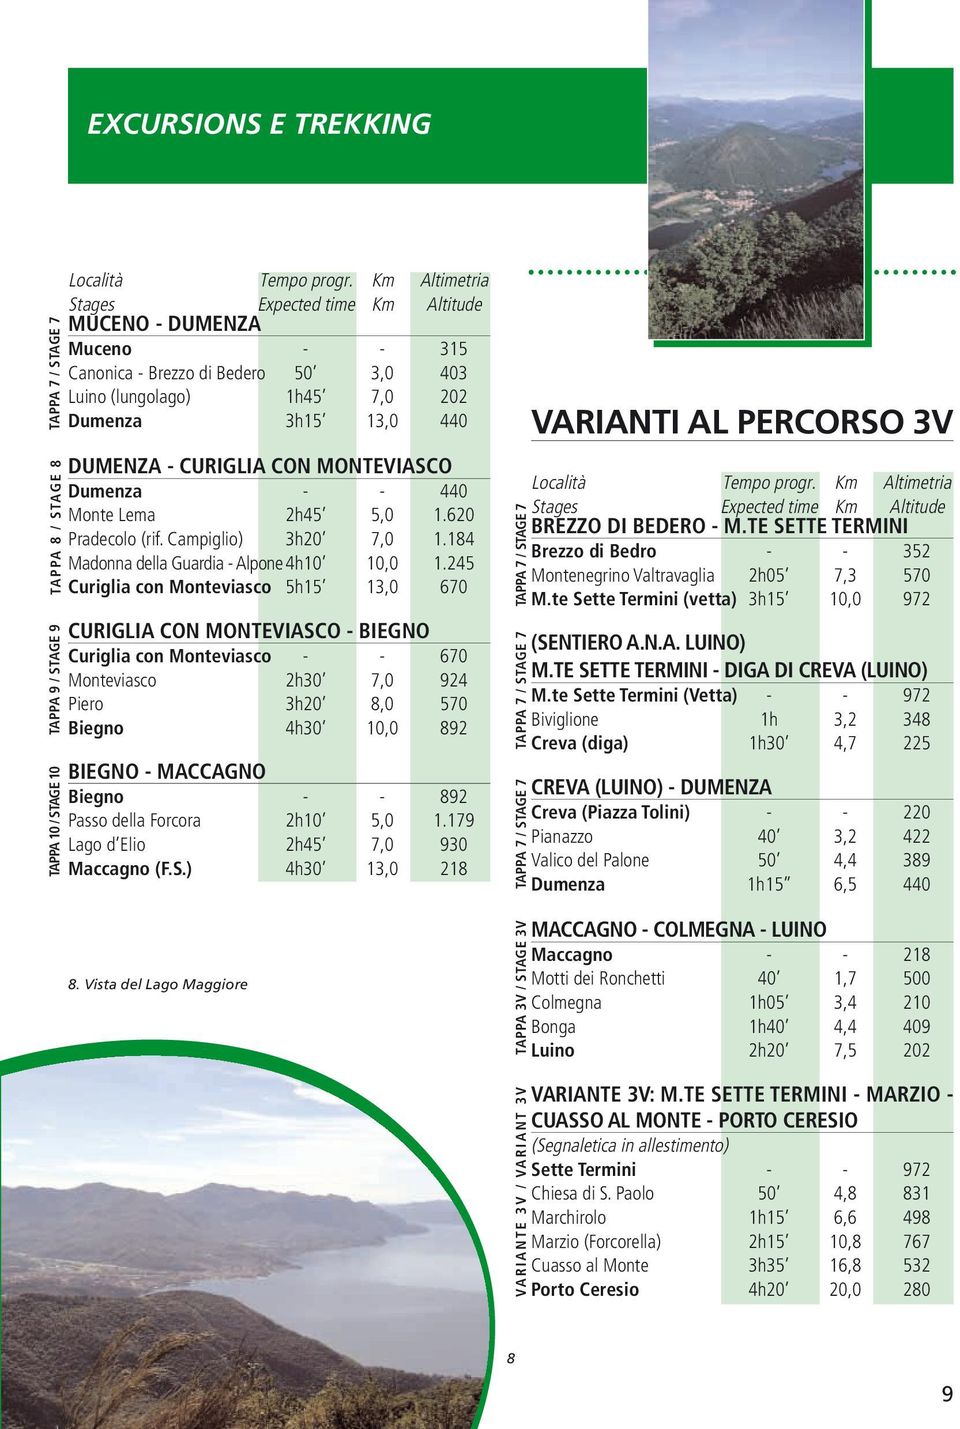 MONTEVIASCO Dumenza - - 440 Monte Lema 2h45 5,0 1.620 Pradecolo (rif. Campiglio) 3h20 7,0 1.184 Madonna della Guardia - Alpone4h10 10,0 1.